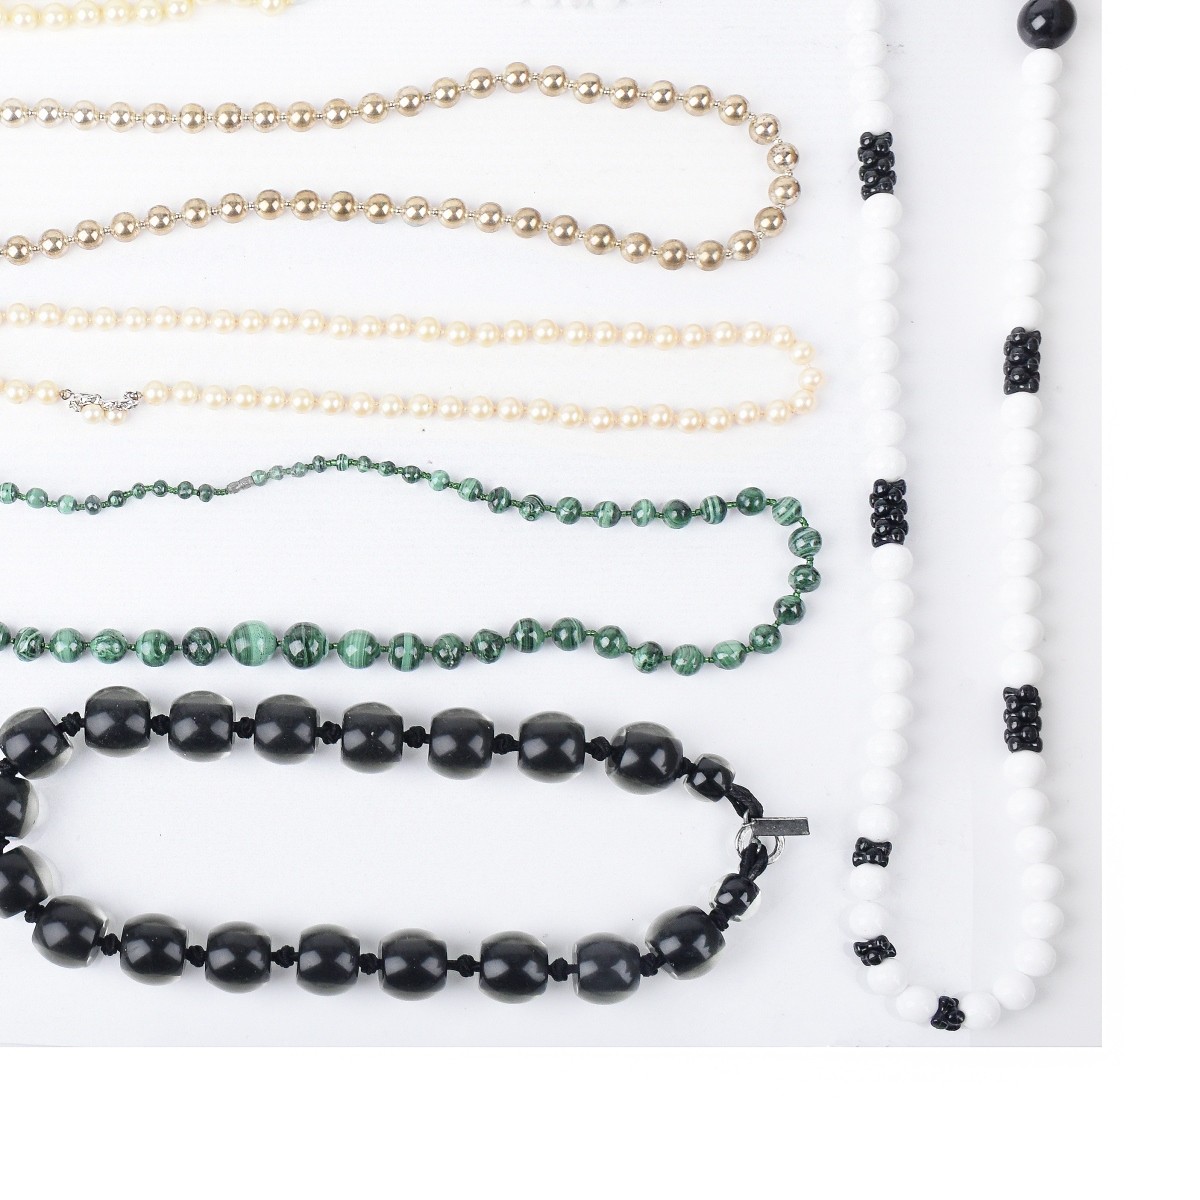 Eleven Costume Jewelry Bead Necklaces